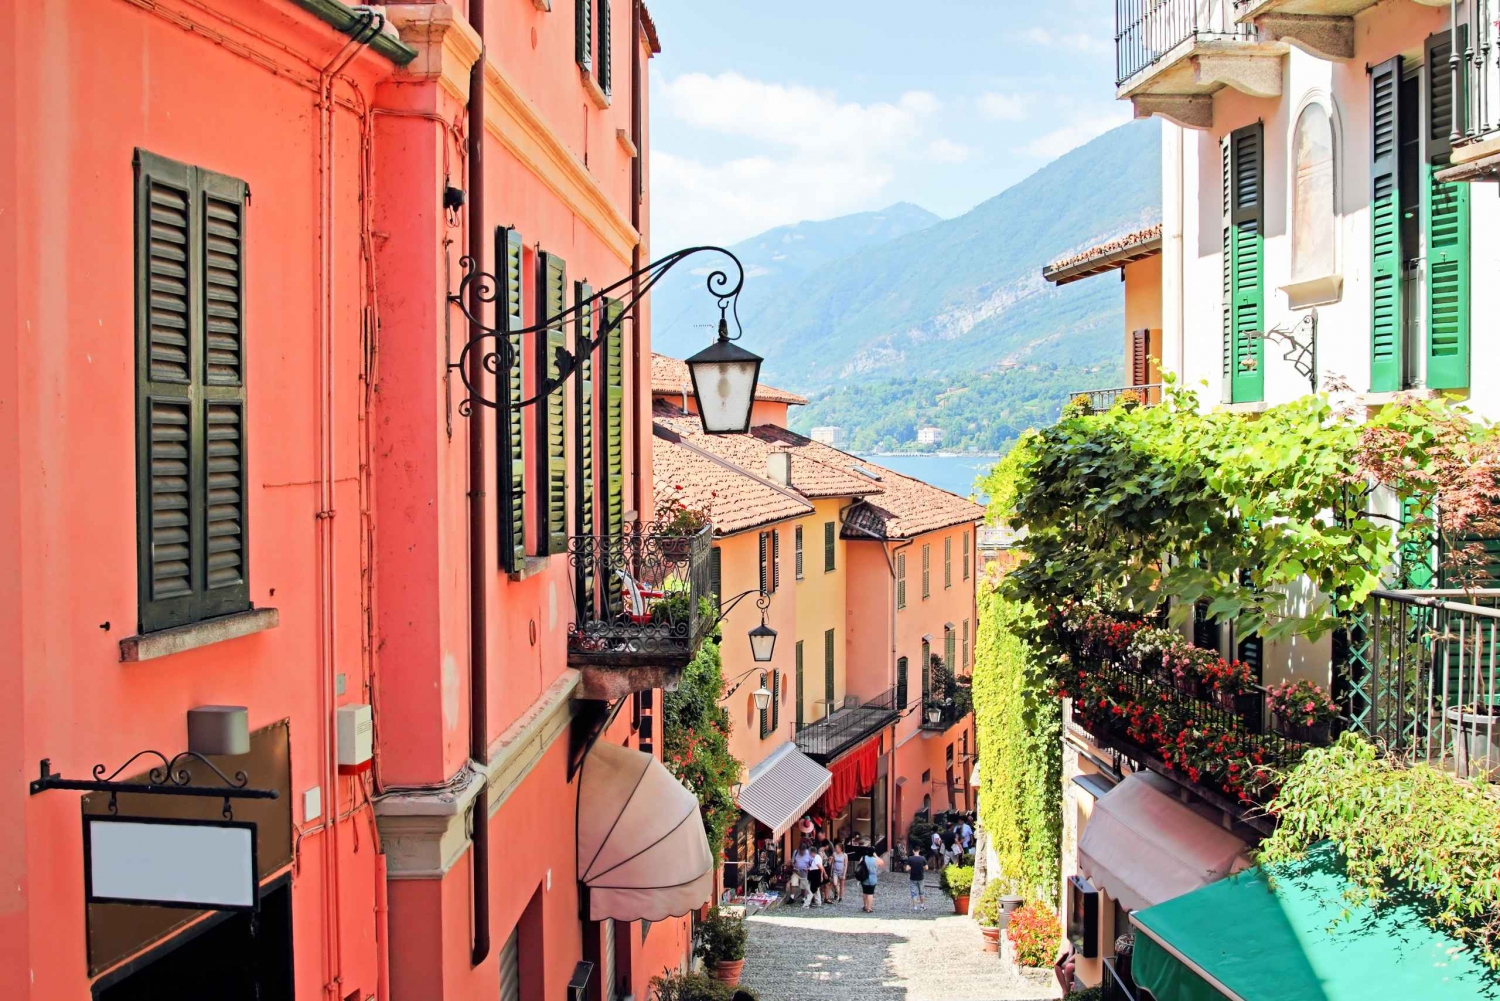 Lake Como, Bellagio and Varenna: Full-Day Tour from Milan